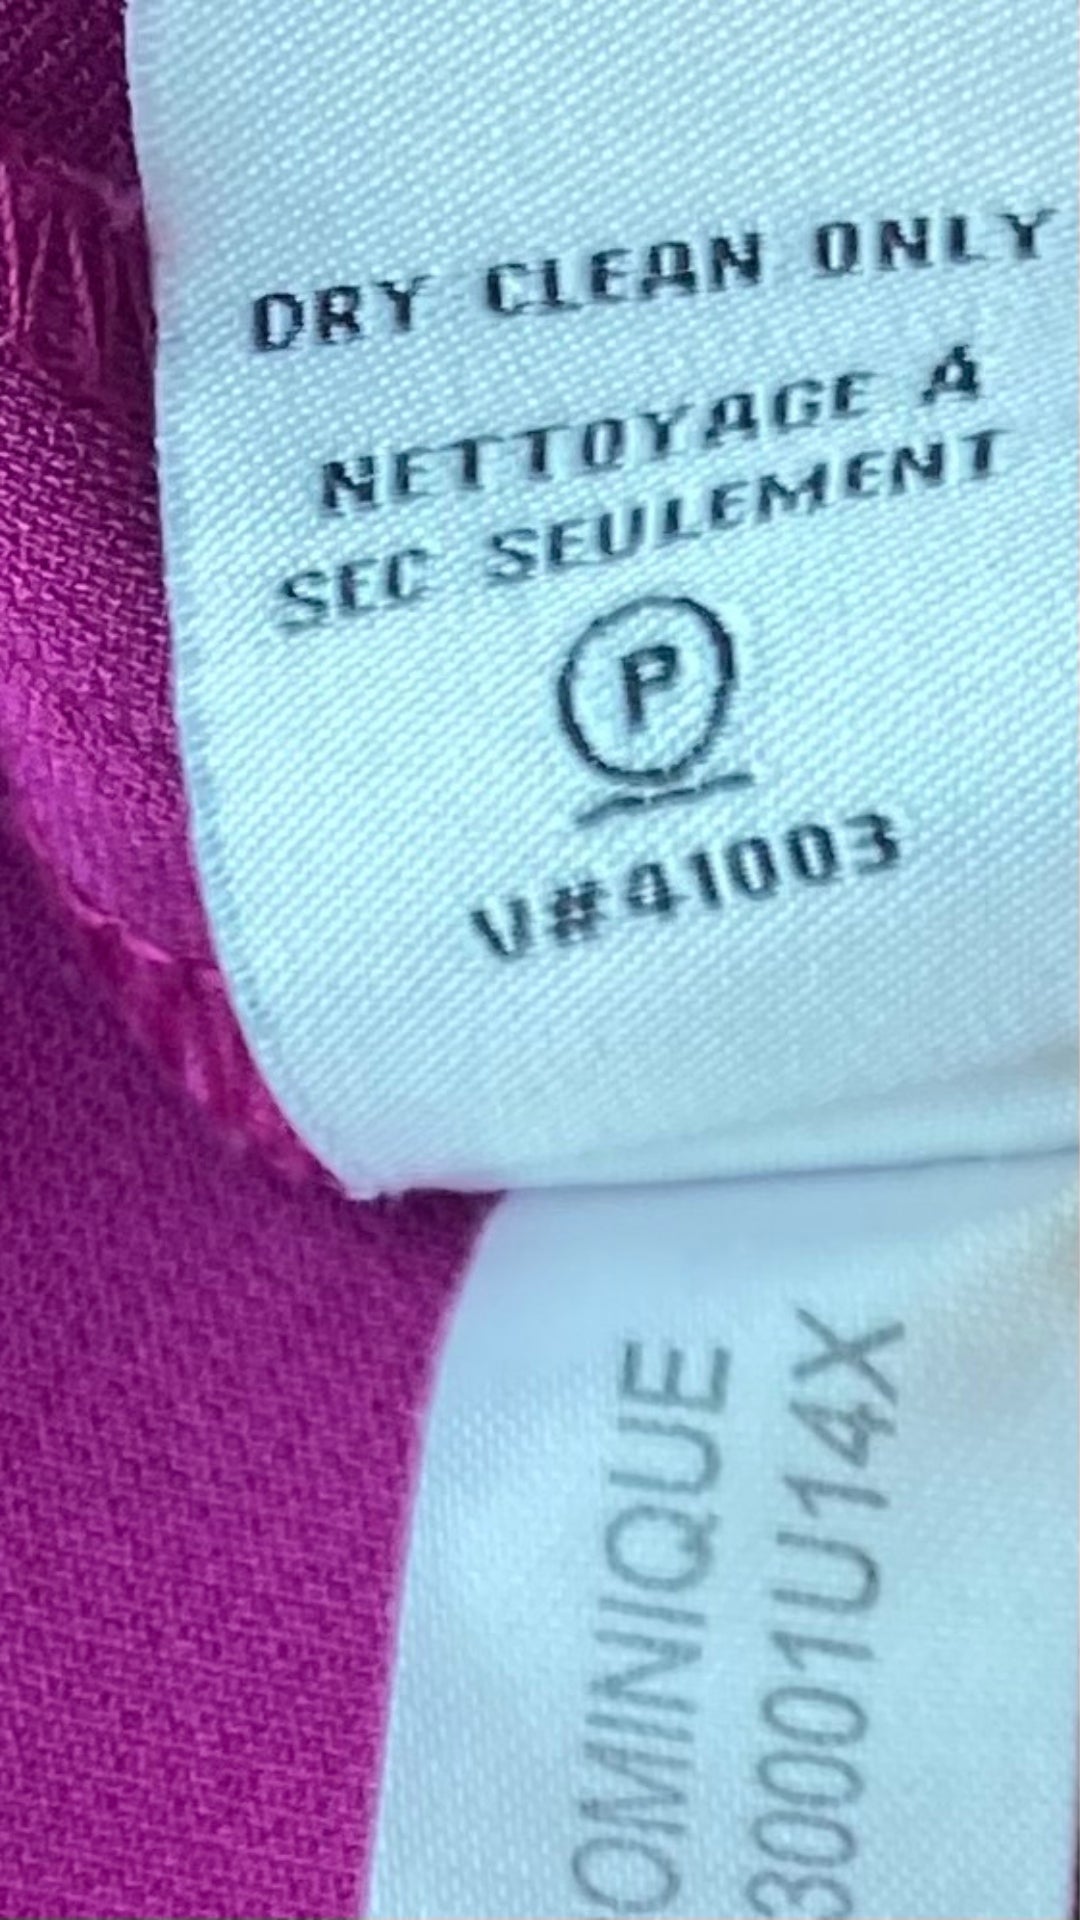 Robe ample avec poches et boutons argentés aux épaules, Diane von Furstenberg, taille 10. Vue de l'étiquette d'entretien.